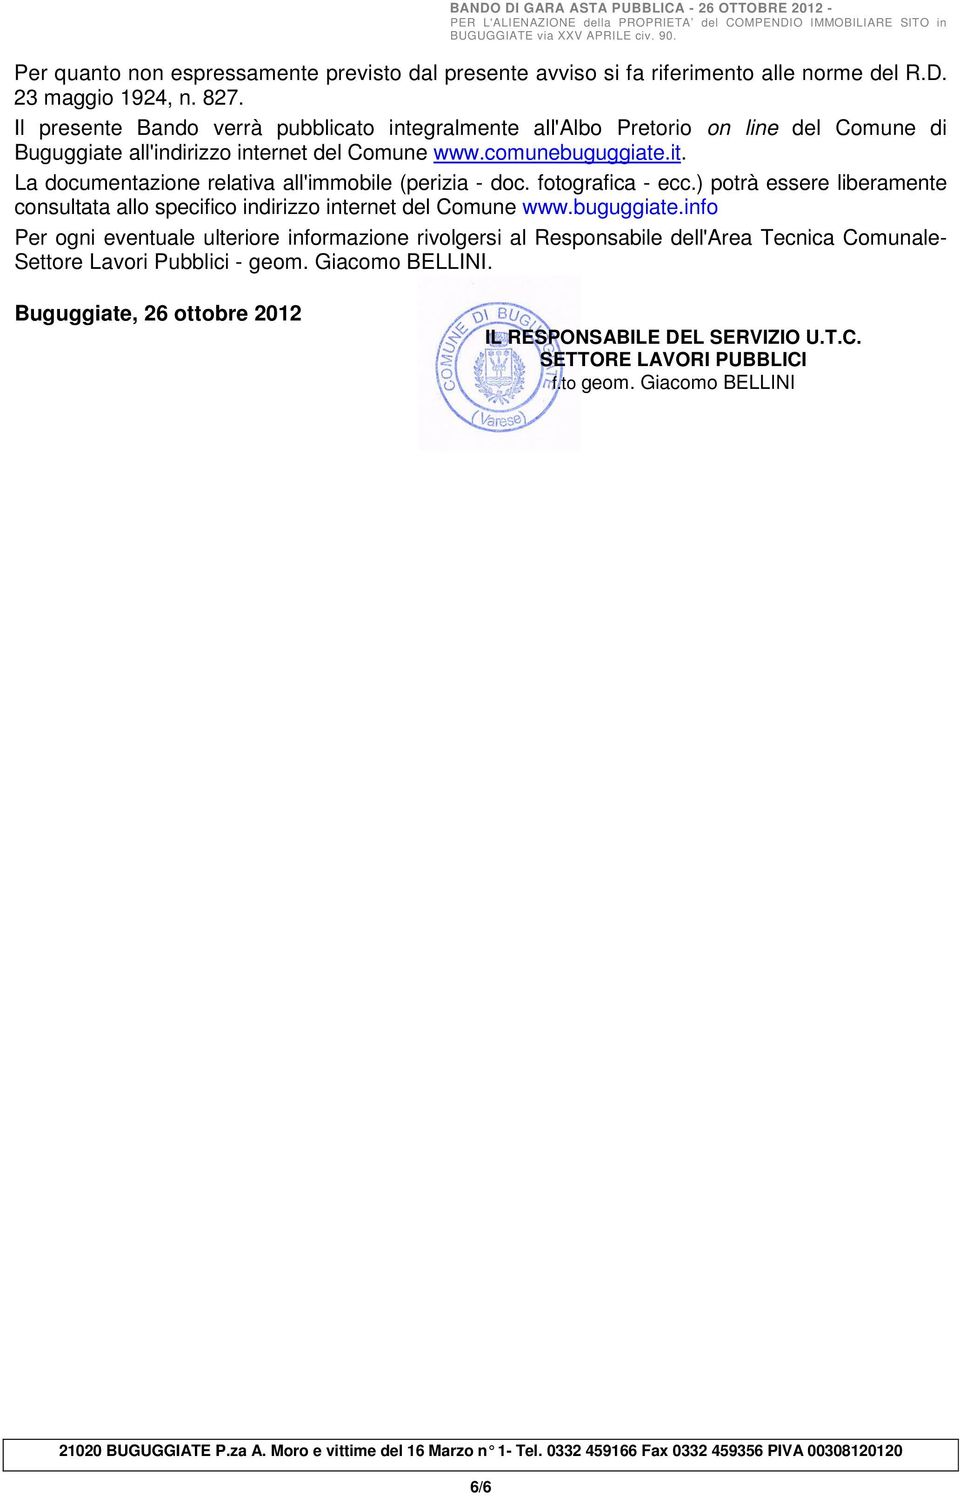 La documentazione relativa all'immobile (perizia - doc. fotografica - ecc.) potrà essere liberamente consultata allo specifico indirizzo internet del Comune www.buguggiate.